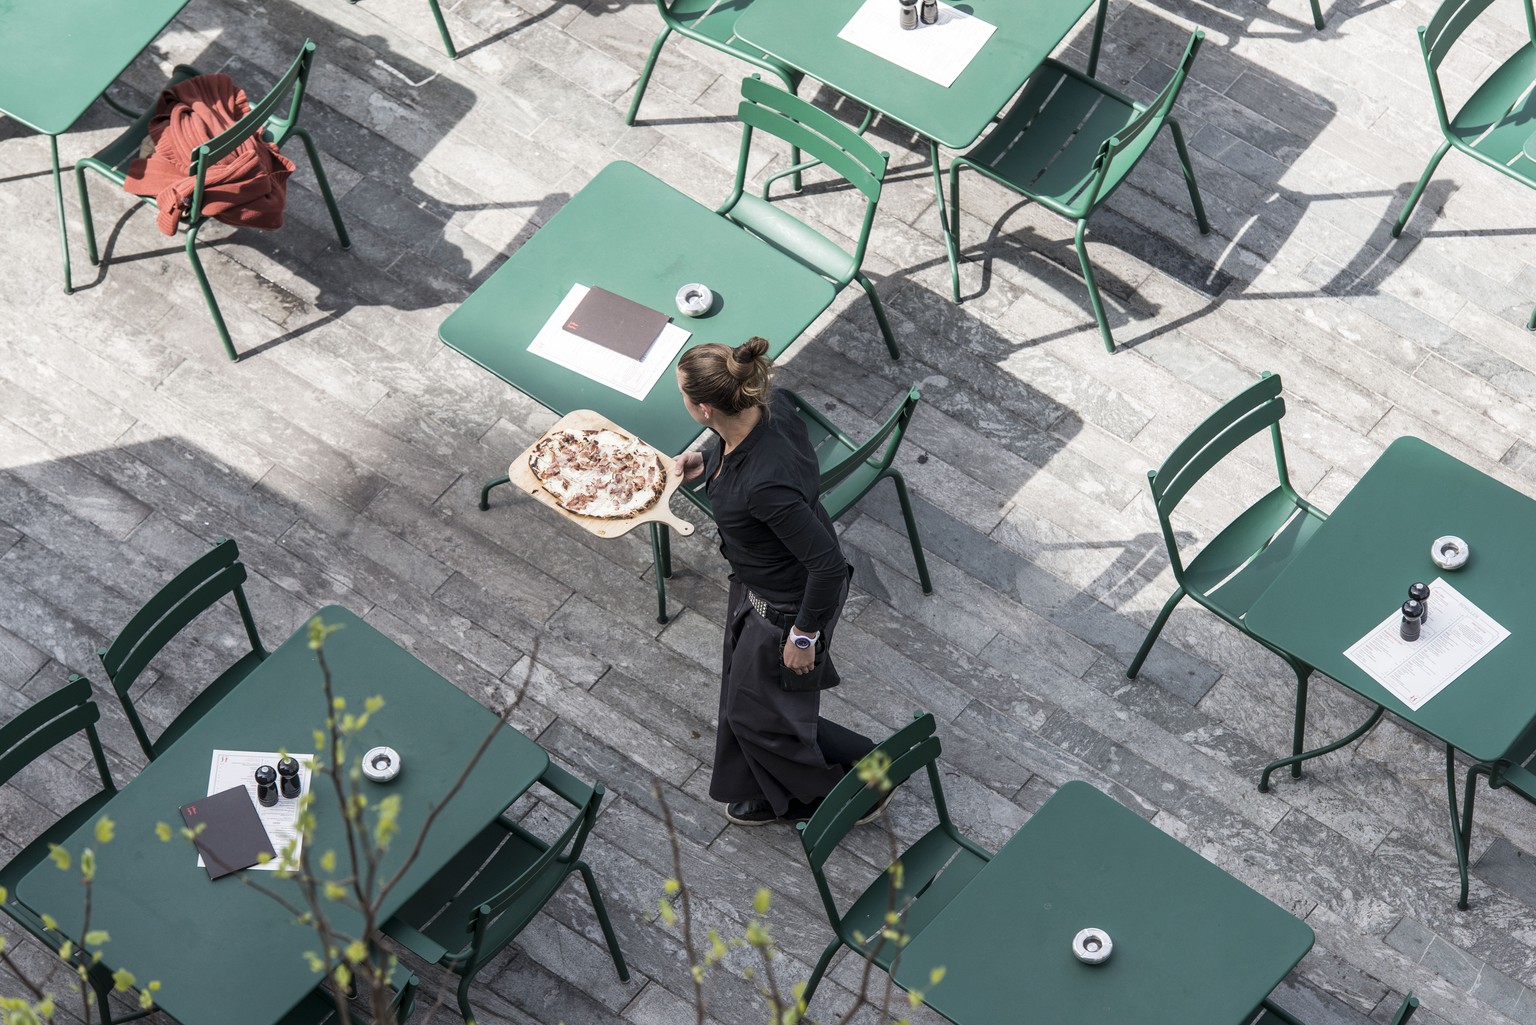 ARCHIVBILD ZUR MELDUNG, DASS AB DEM 11. MAI AUCH RESTAURANTS WIEDER OEFFNEN DUERFEN - Waiter in a restaurant in Zurich, pictured on (KEYSTONE/Christian Beutler)